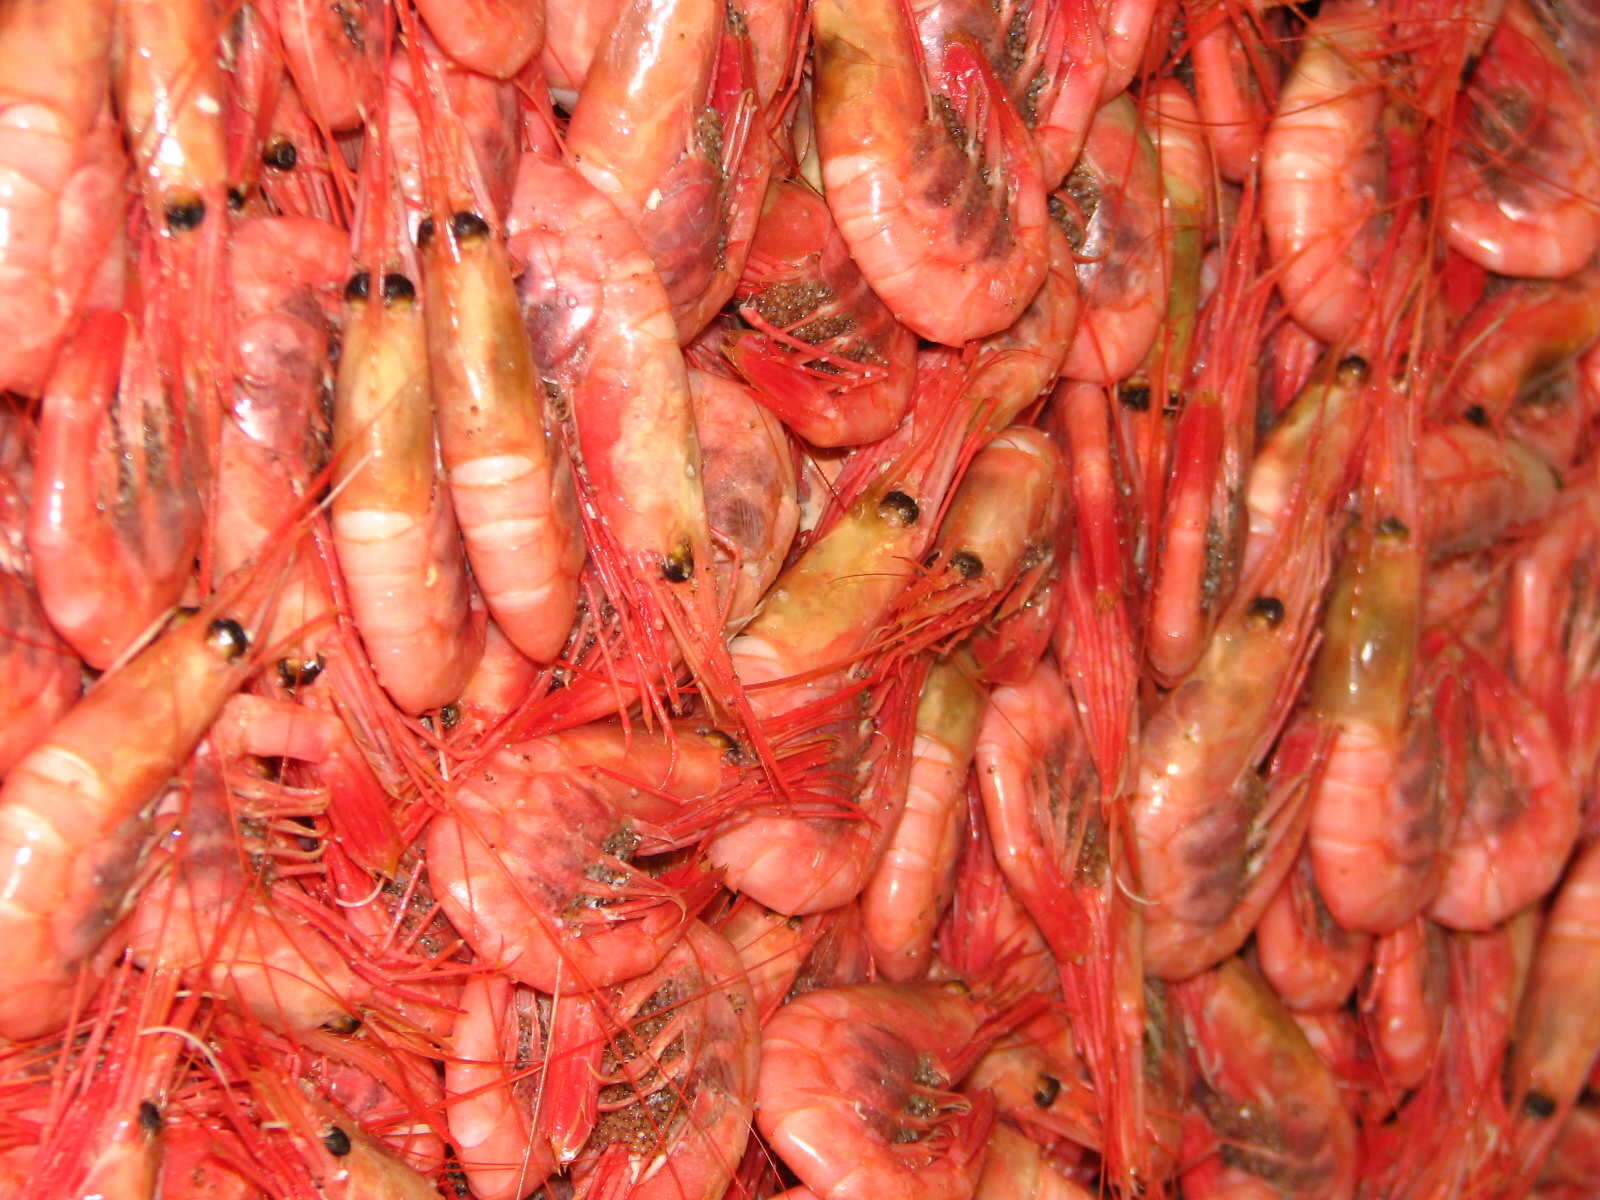 Image of northern prawn